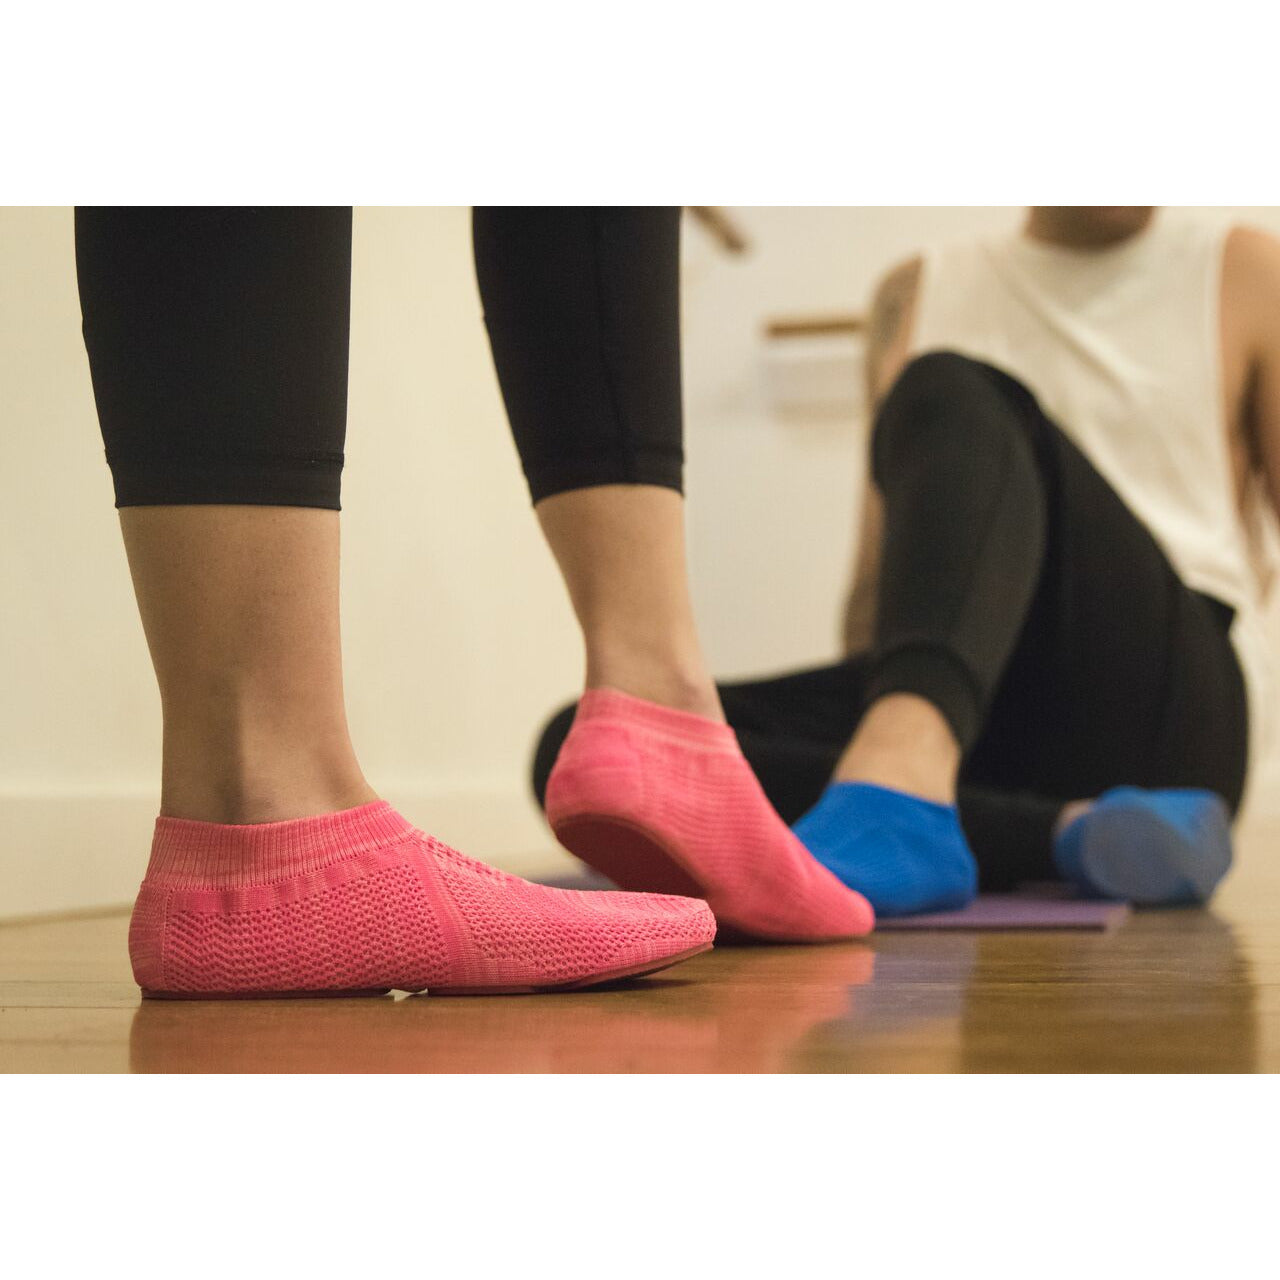 XtremeKinetic Minimal training shoes pink/pink size US WOMEN(6.5-7) EURO SIZE 37-38